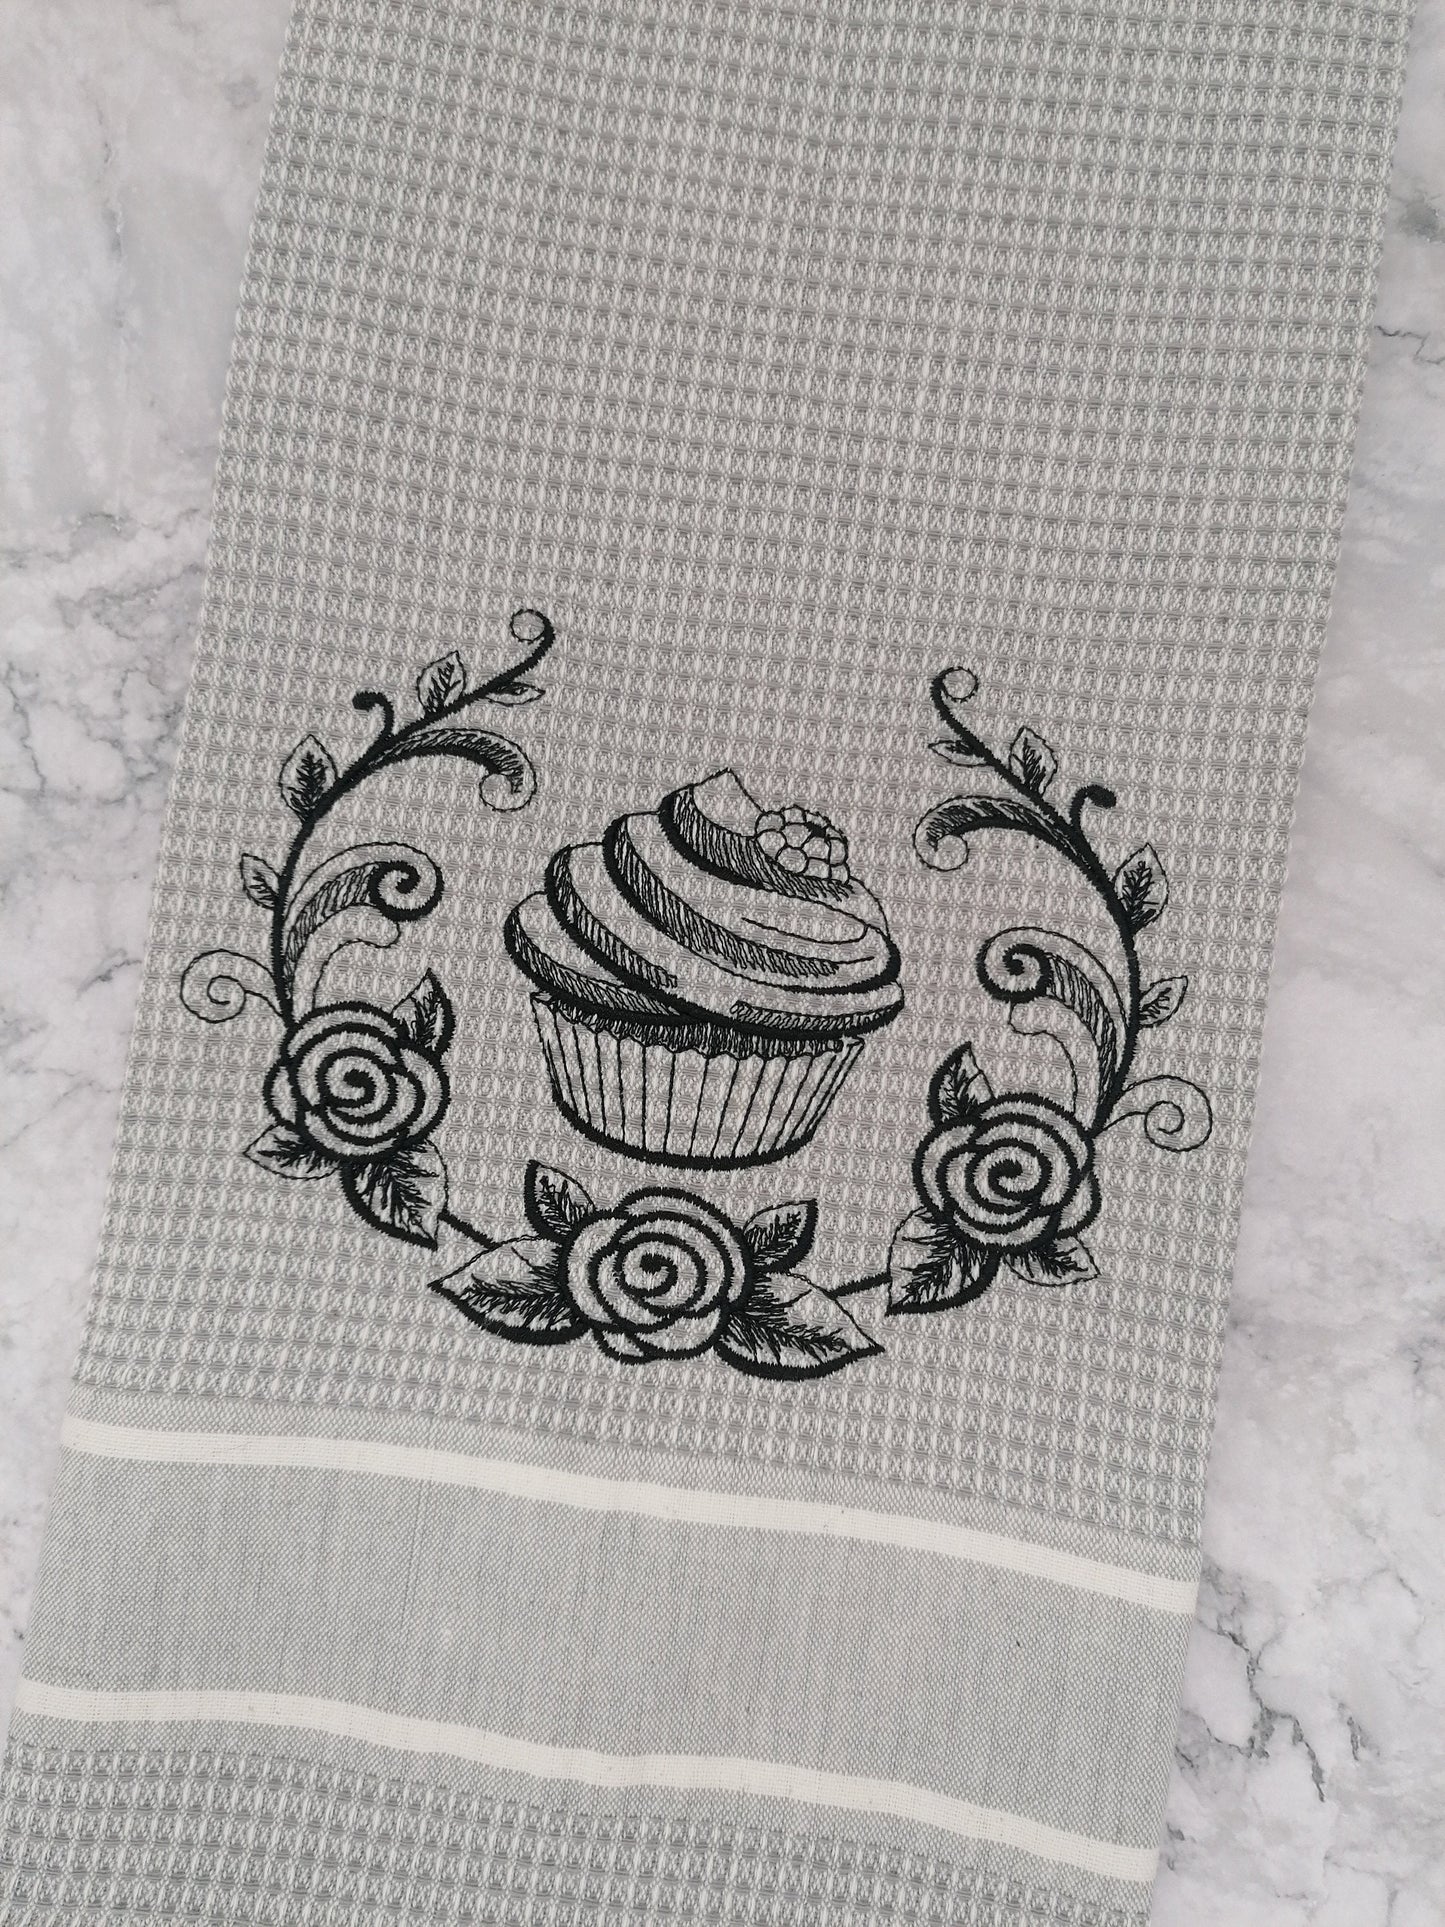 Embroidered Kitchen Tea Towel, Embroidered Design, Kitchen Accessories. Kitchen Decor, Cupcake Design, Kitchen Tea-Towels